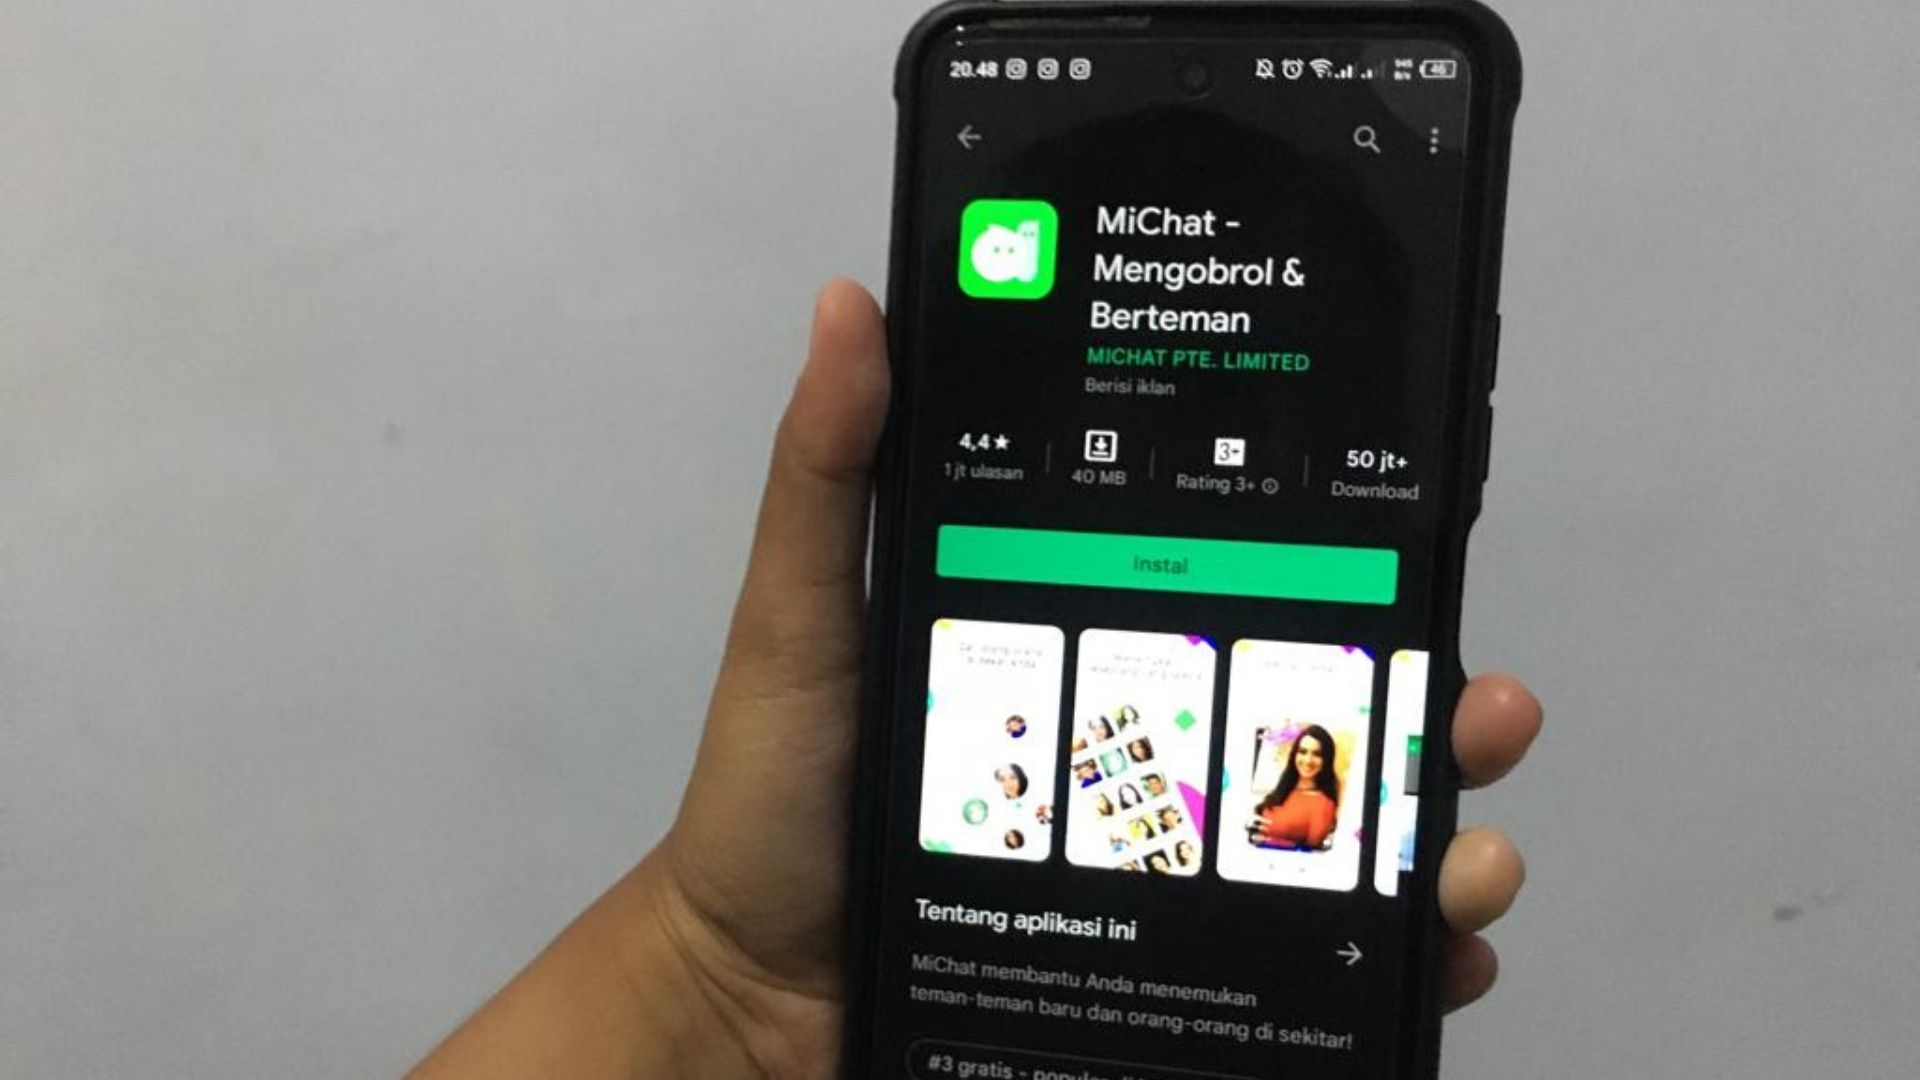 Cara Mudah Hapus Akun MiChat Secara Permanen 